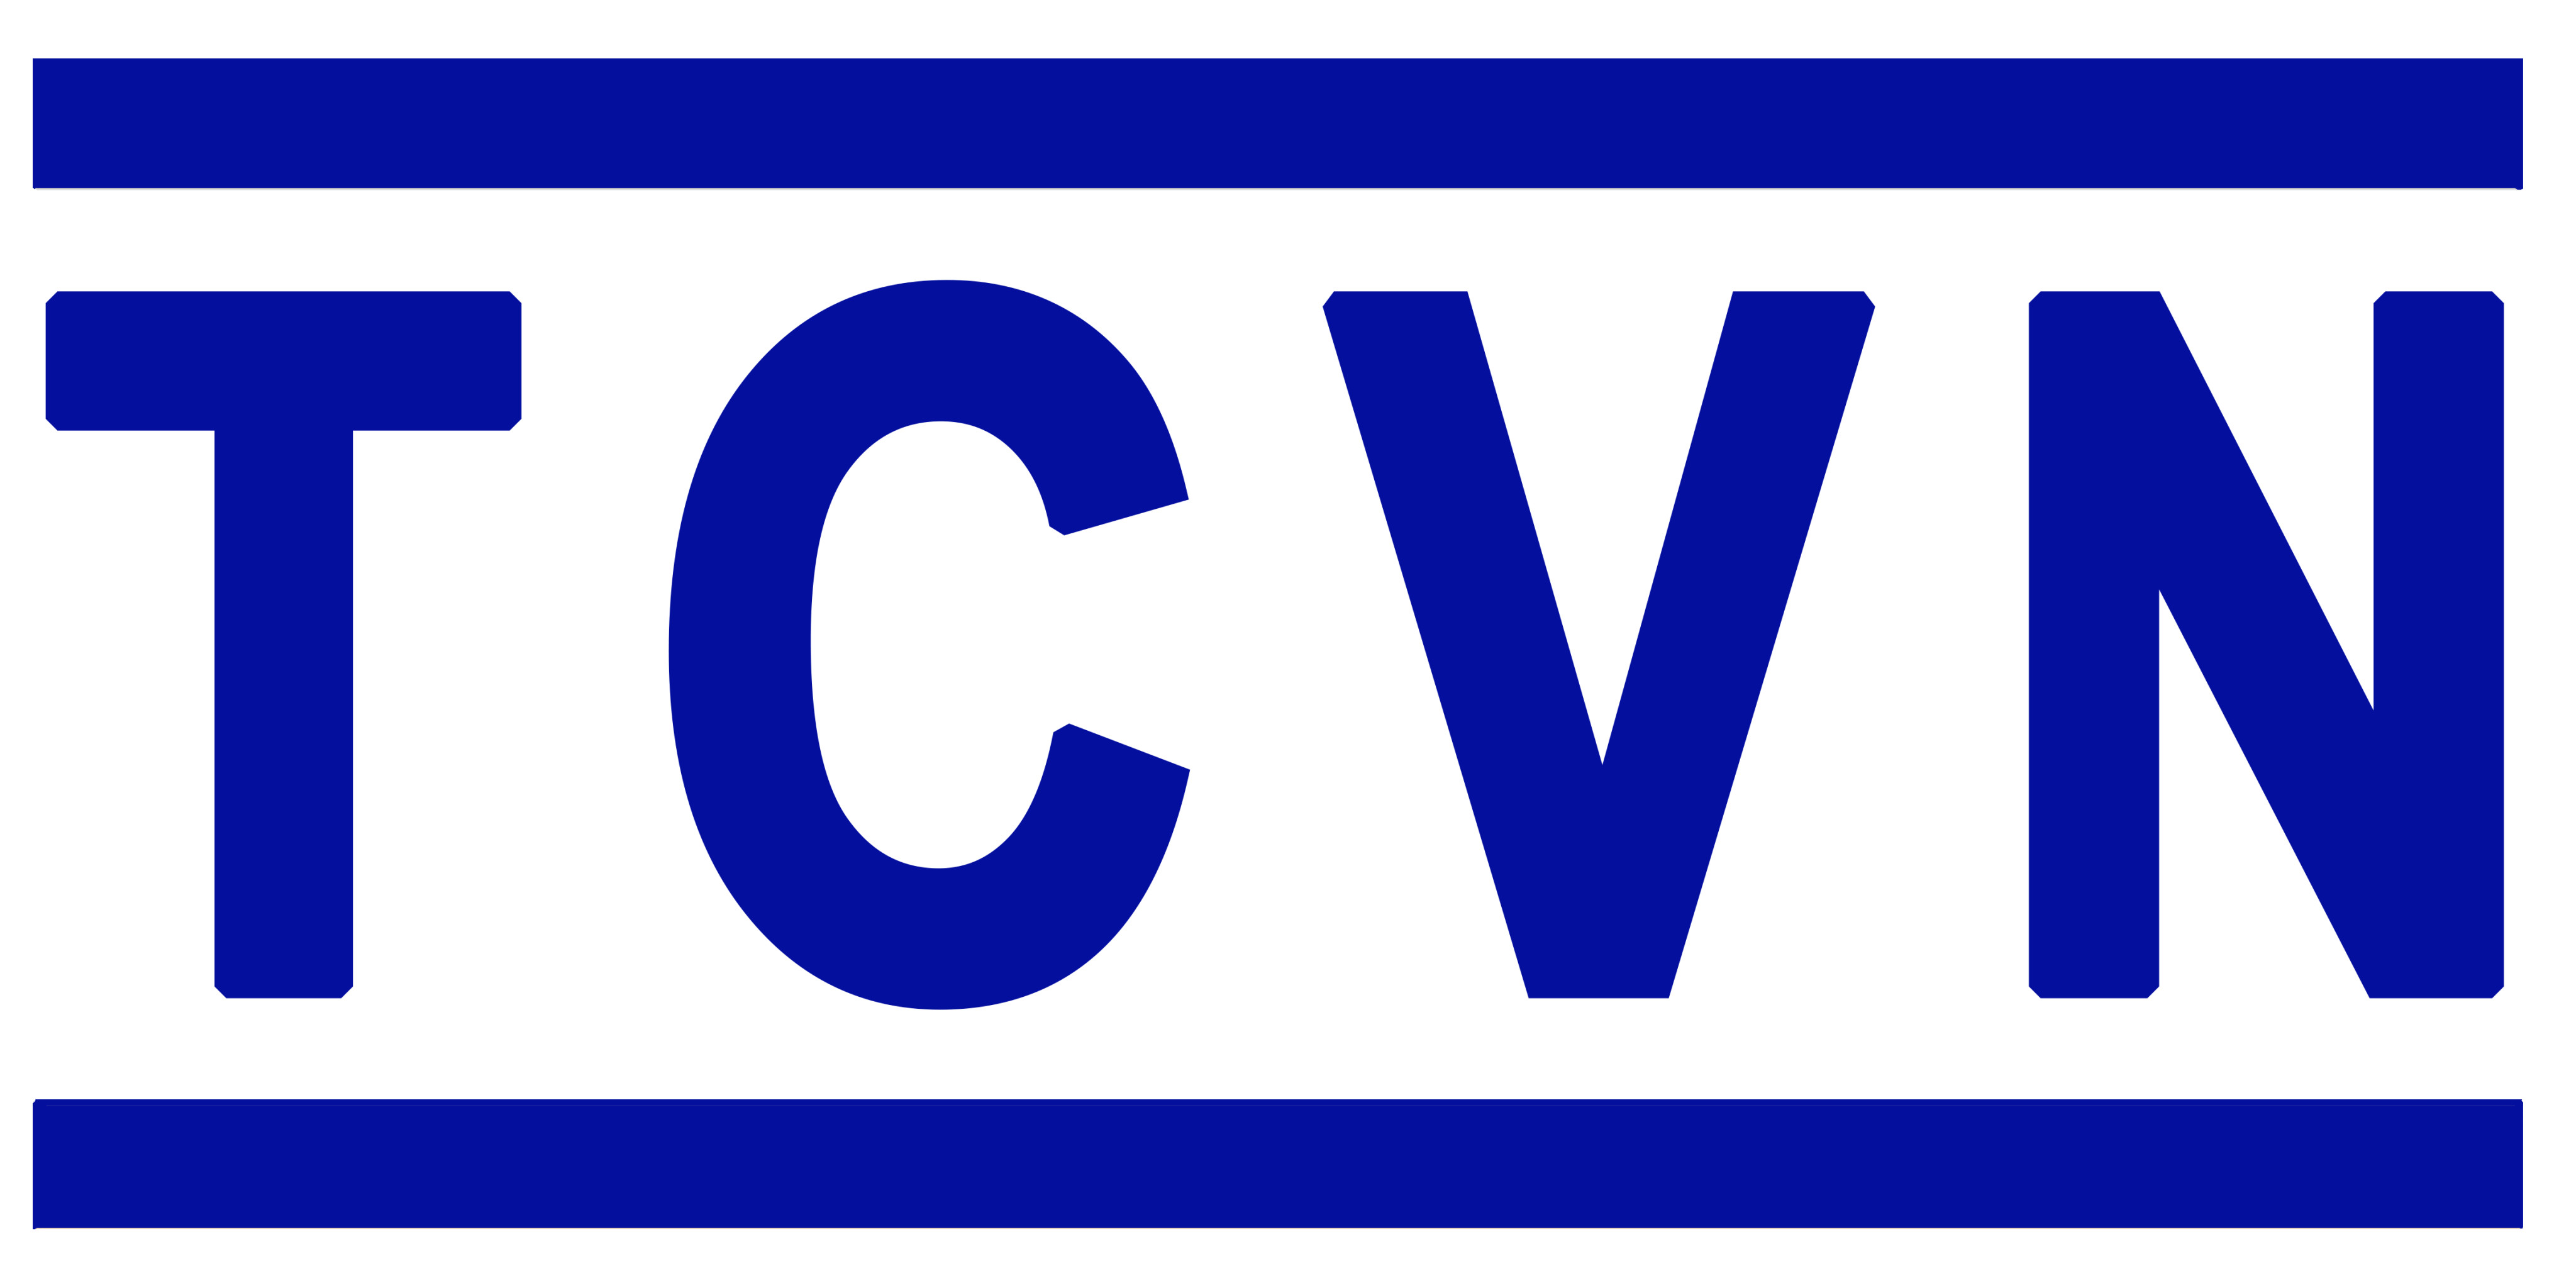 Danh mục tiêu chuẩn Quốc Gia (TCVN) công bố tháng 7 năm 2020